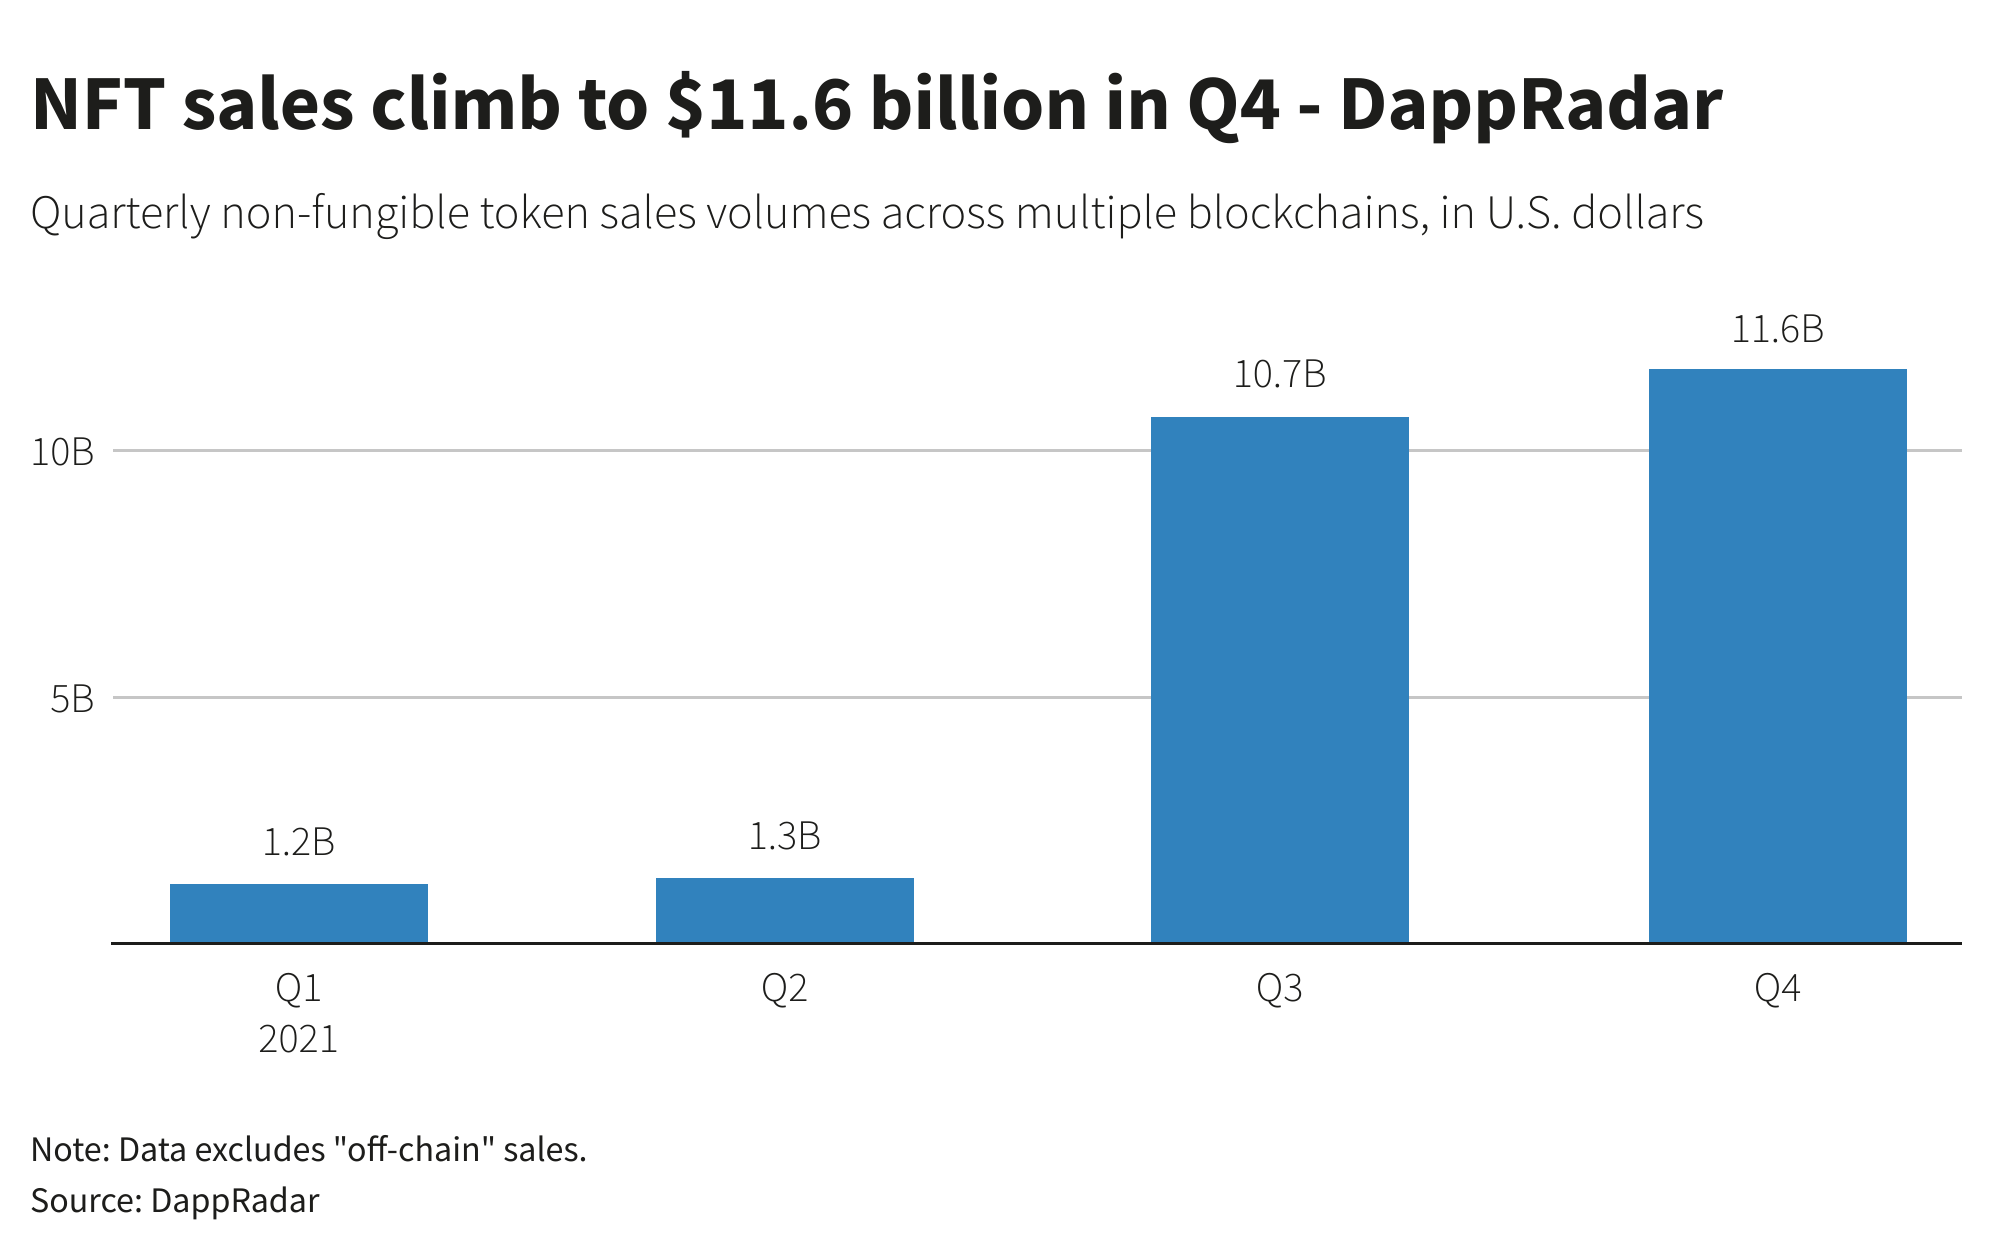 NFT sales climb to $11.6 billion in Q4 - DappRadar